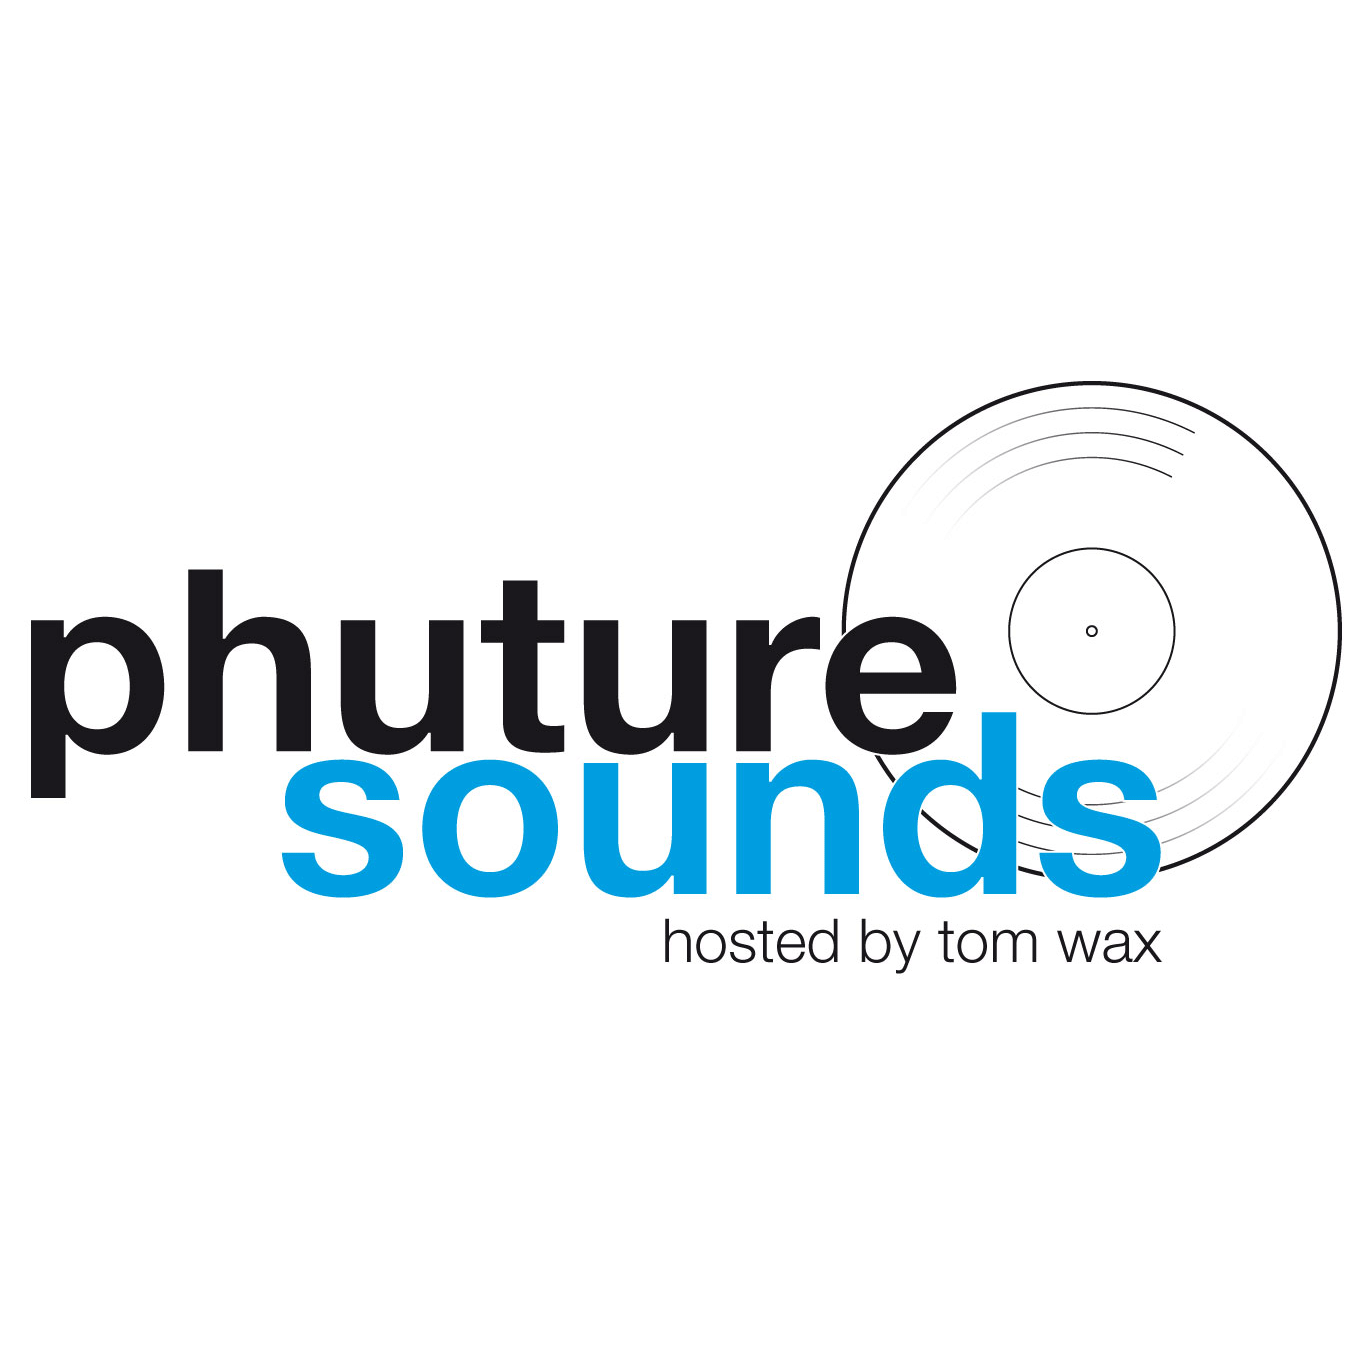 Phuture Sounds